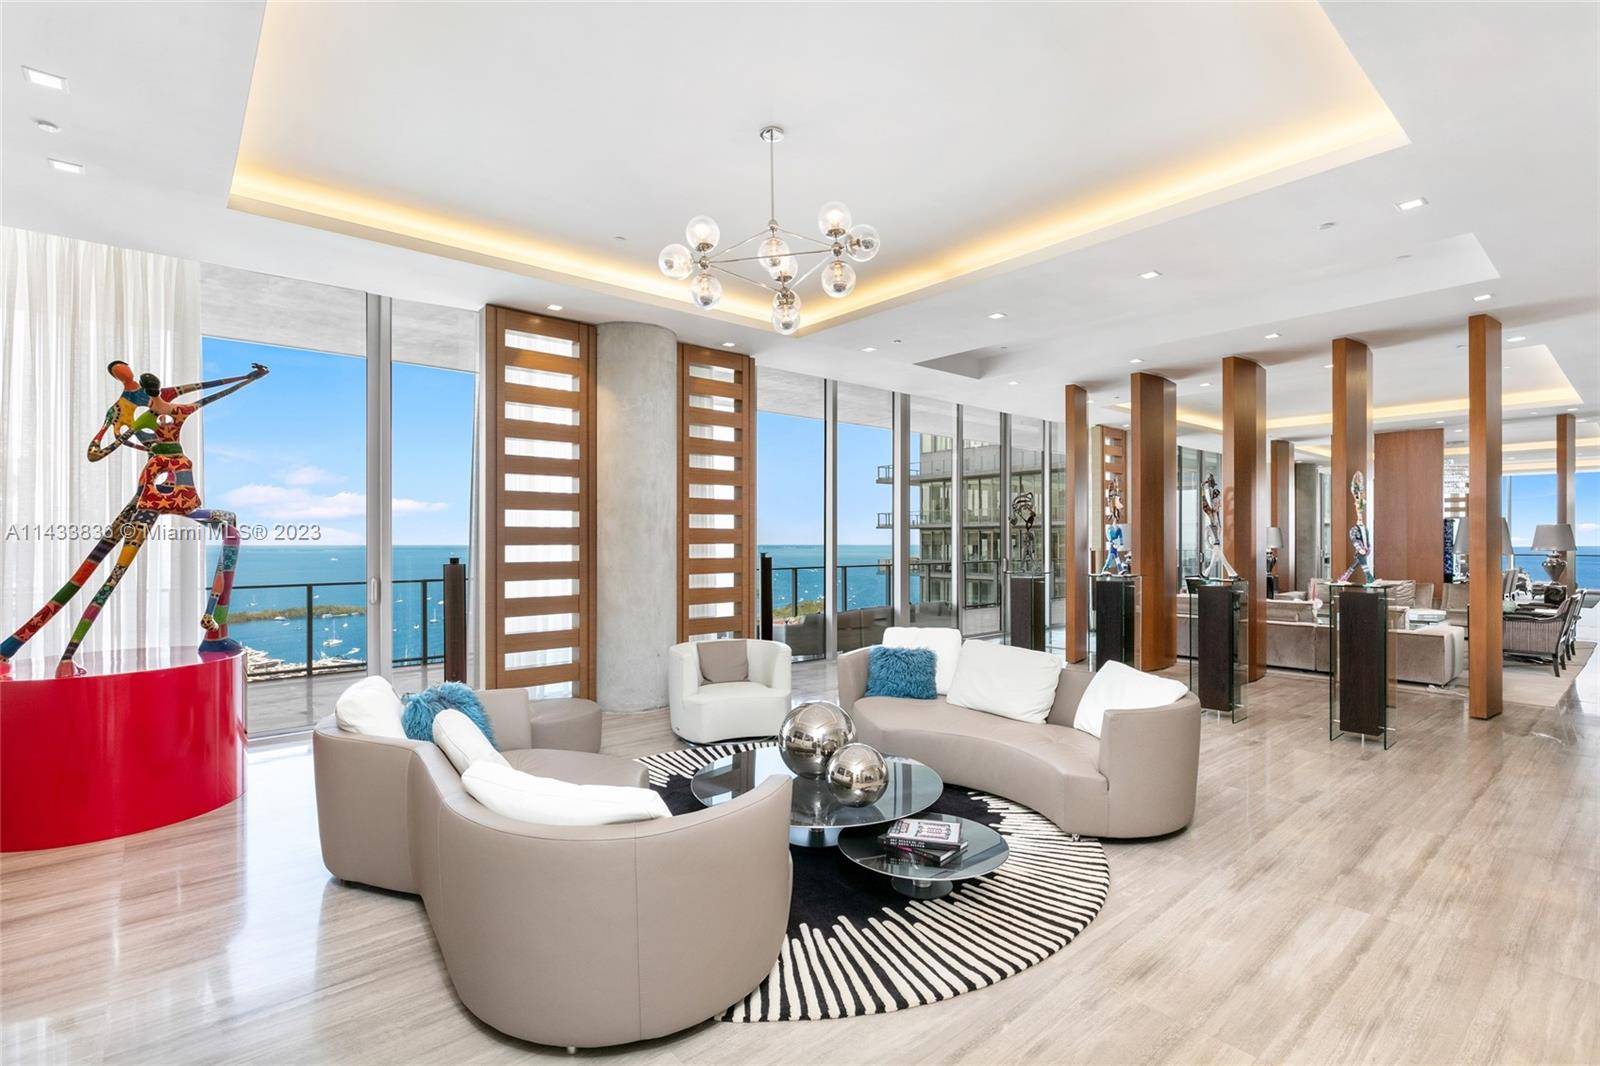 Discover Miami's grandest single floor condo in Miami, spanning 11, 000 sq.